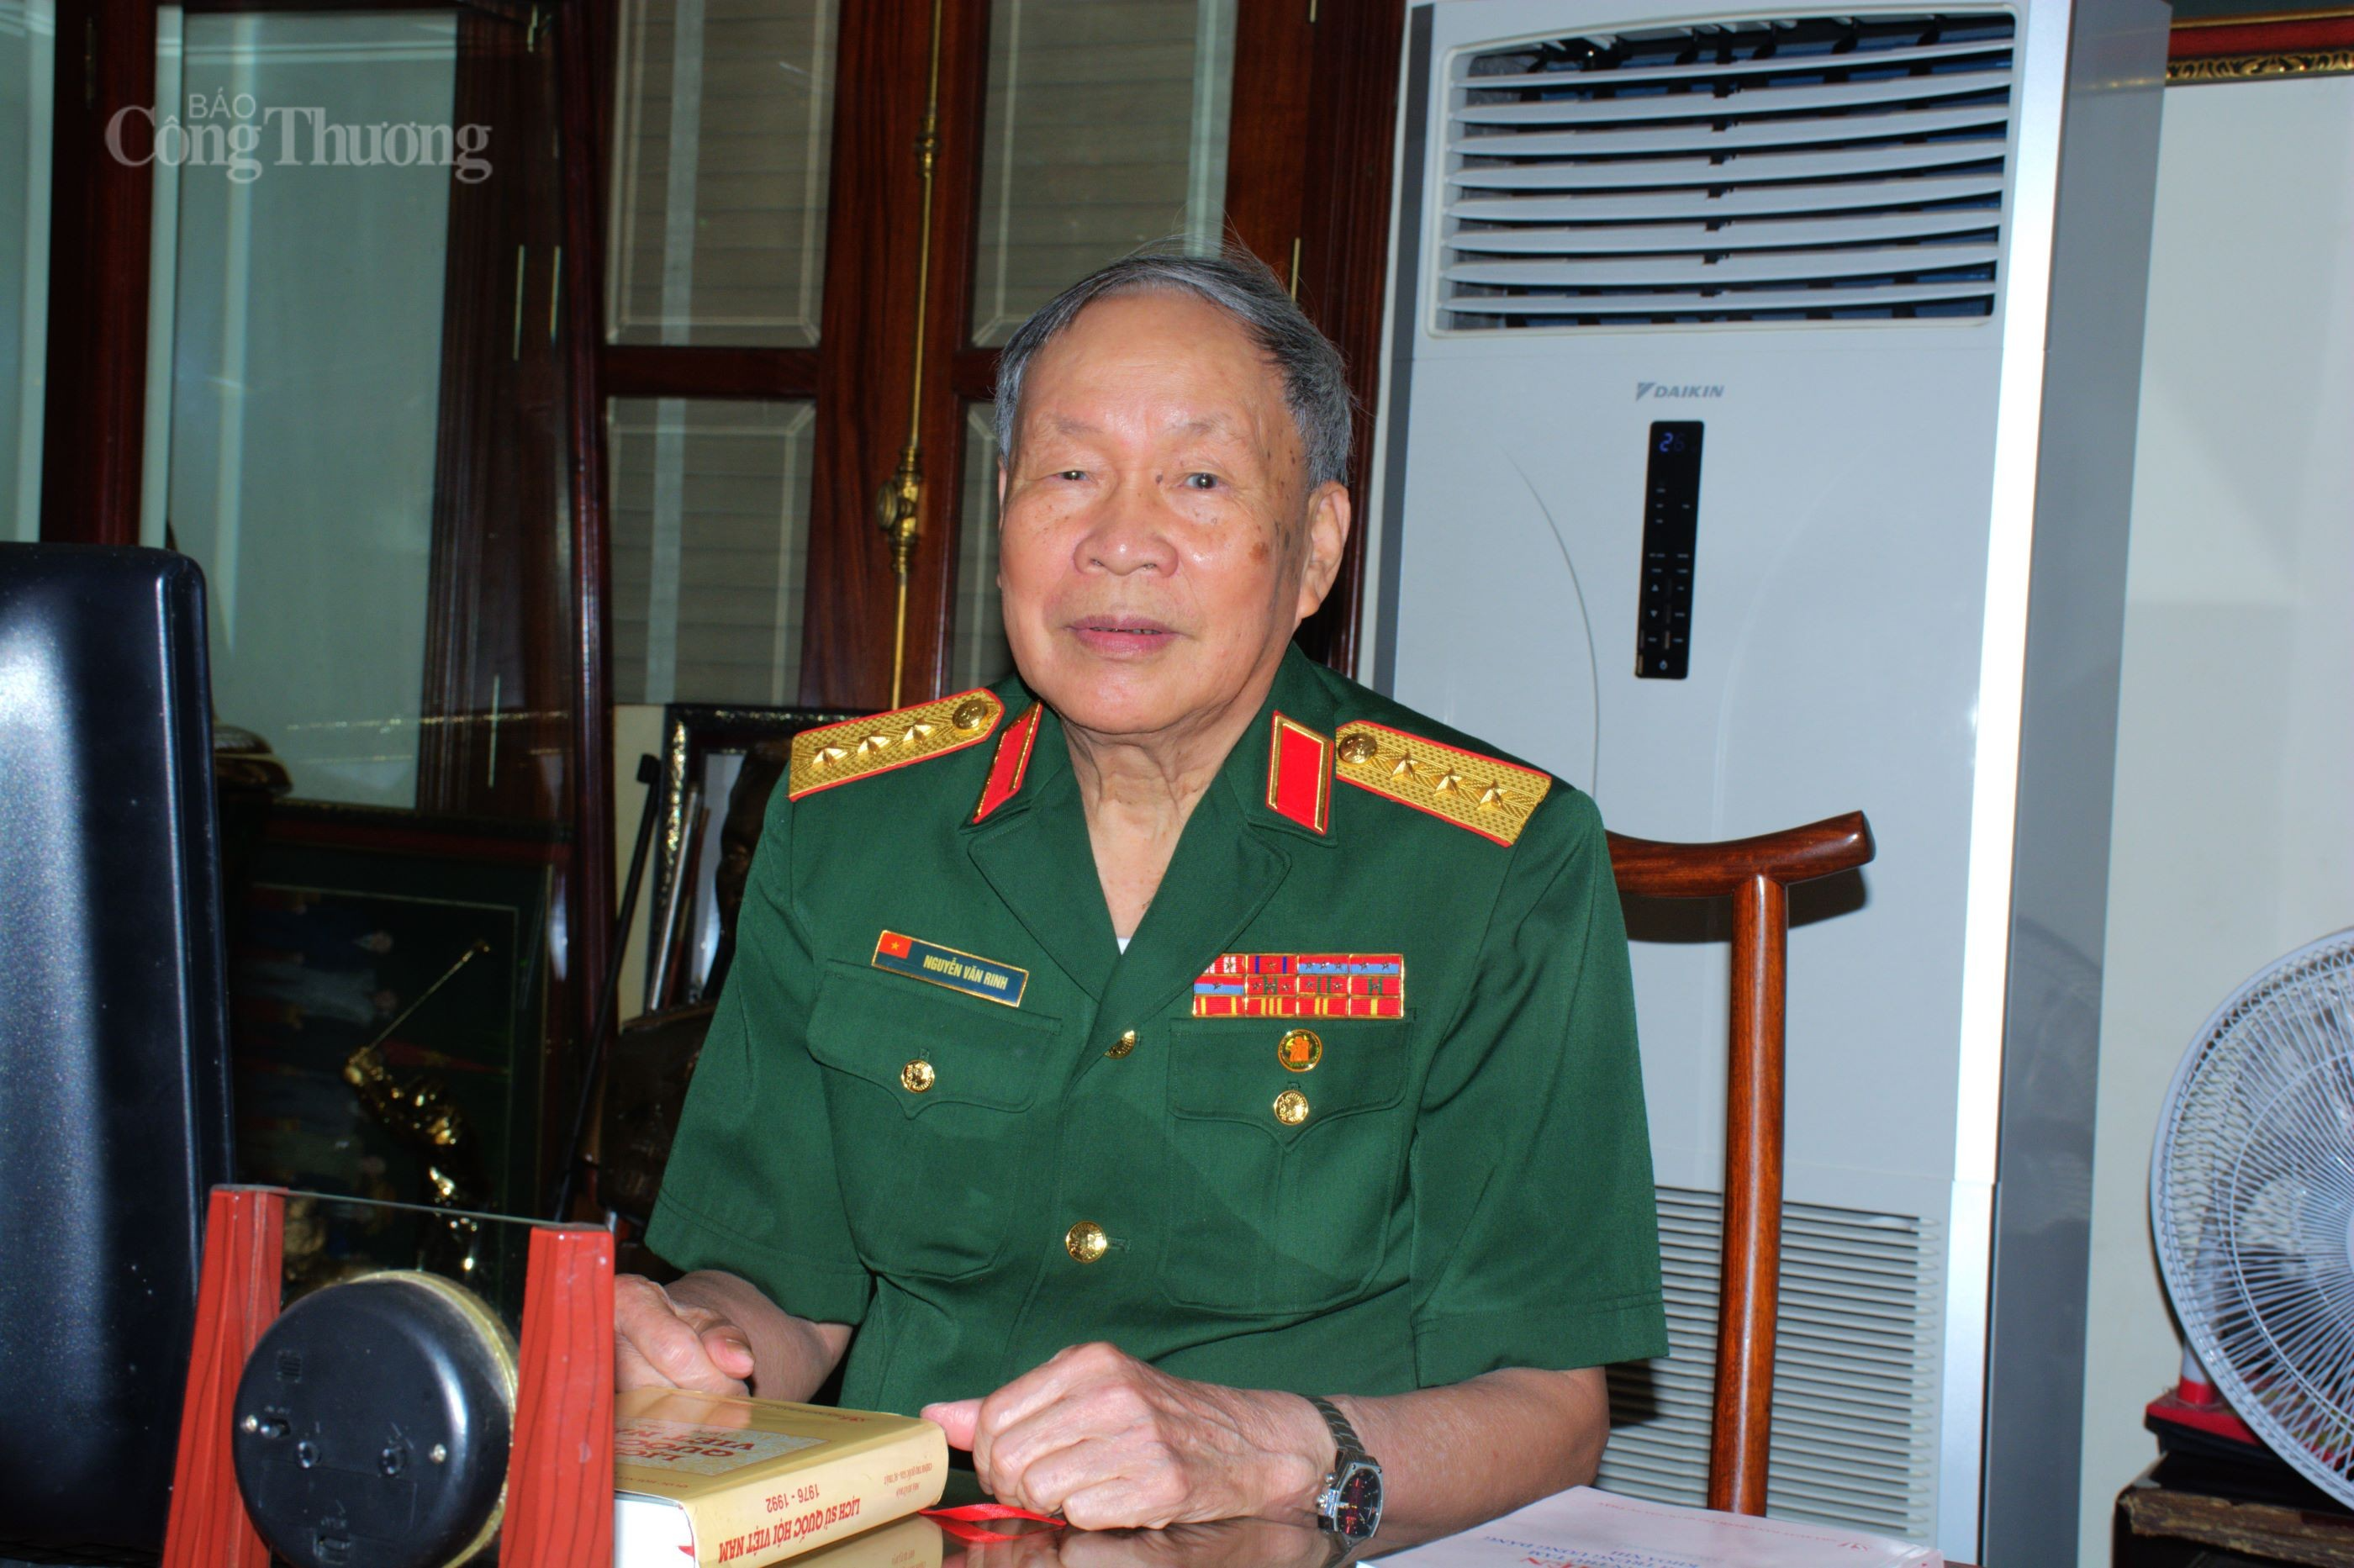 Thượng tướng Nguyễn Văn Rinh chia sẻ với phóng viên Báo Công Thương